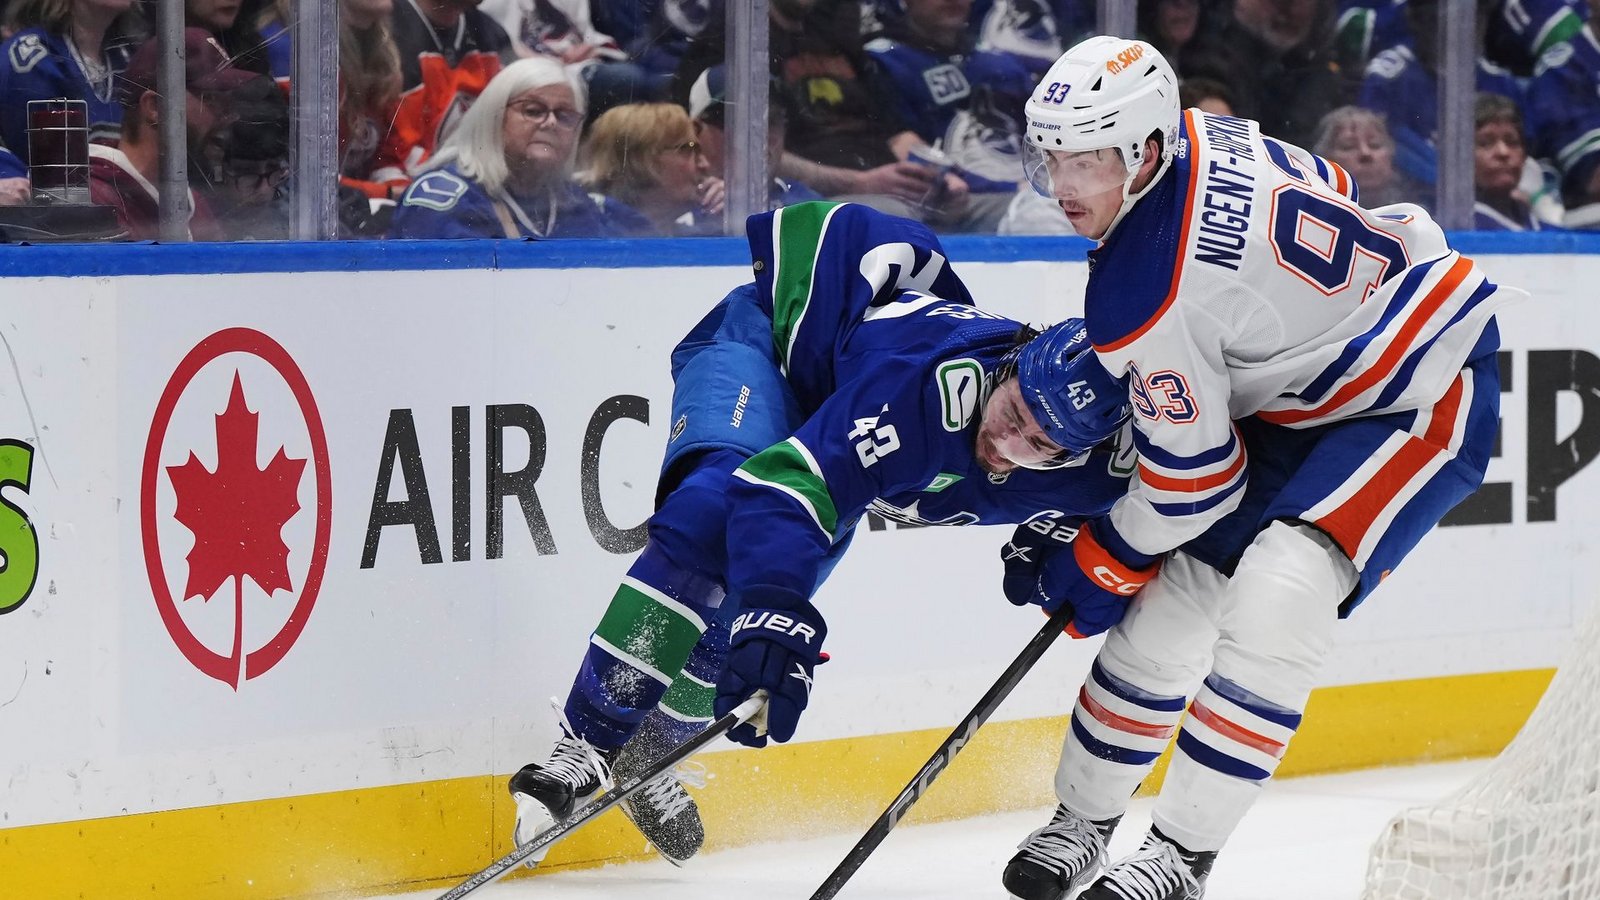 Quinn Hughes von den Vancouver Canucks wird von Ryan Nugent-Hopkins von den Edmonton Oilers zu Fall gebracht.Foto: Darryl Dyck/The Canadian Press via AP/dpa